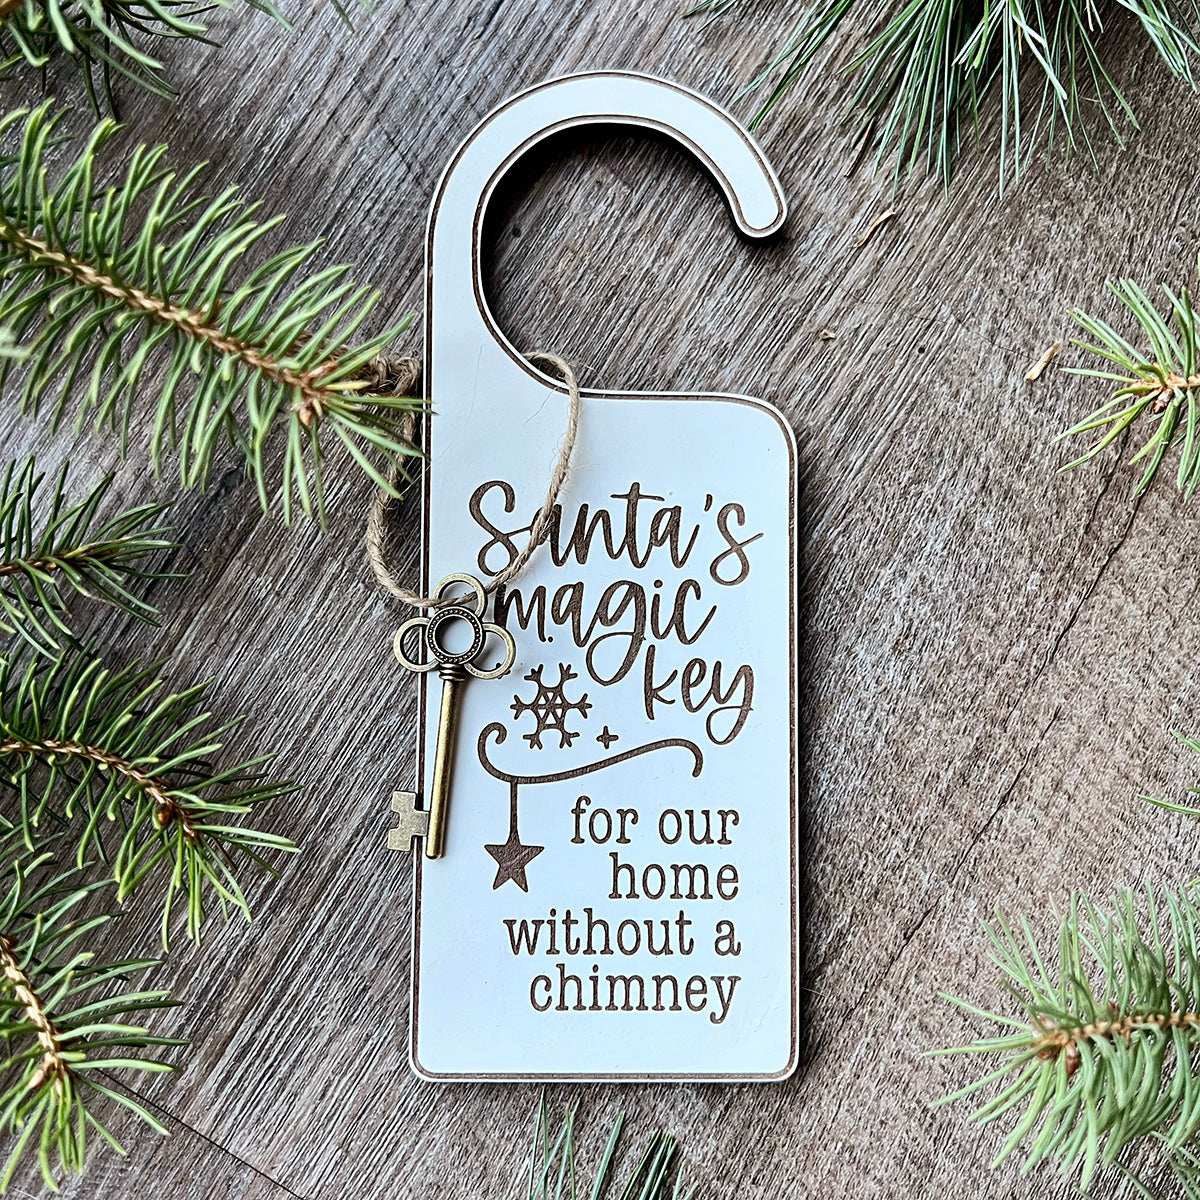 Santa's Magic Key Door Hanger